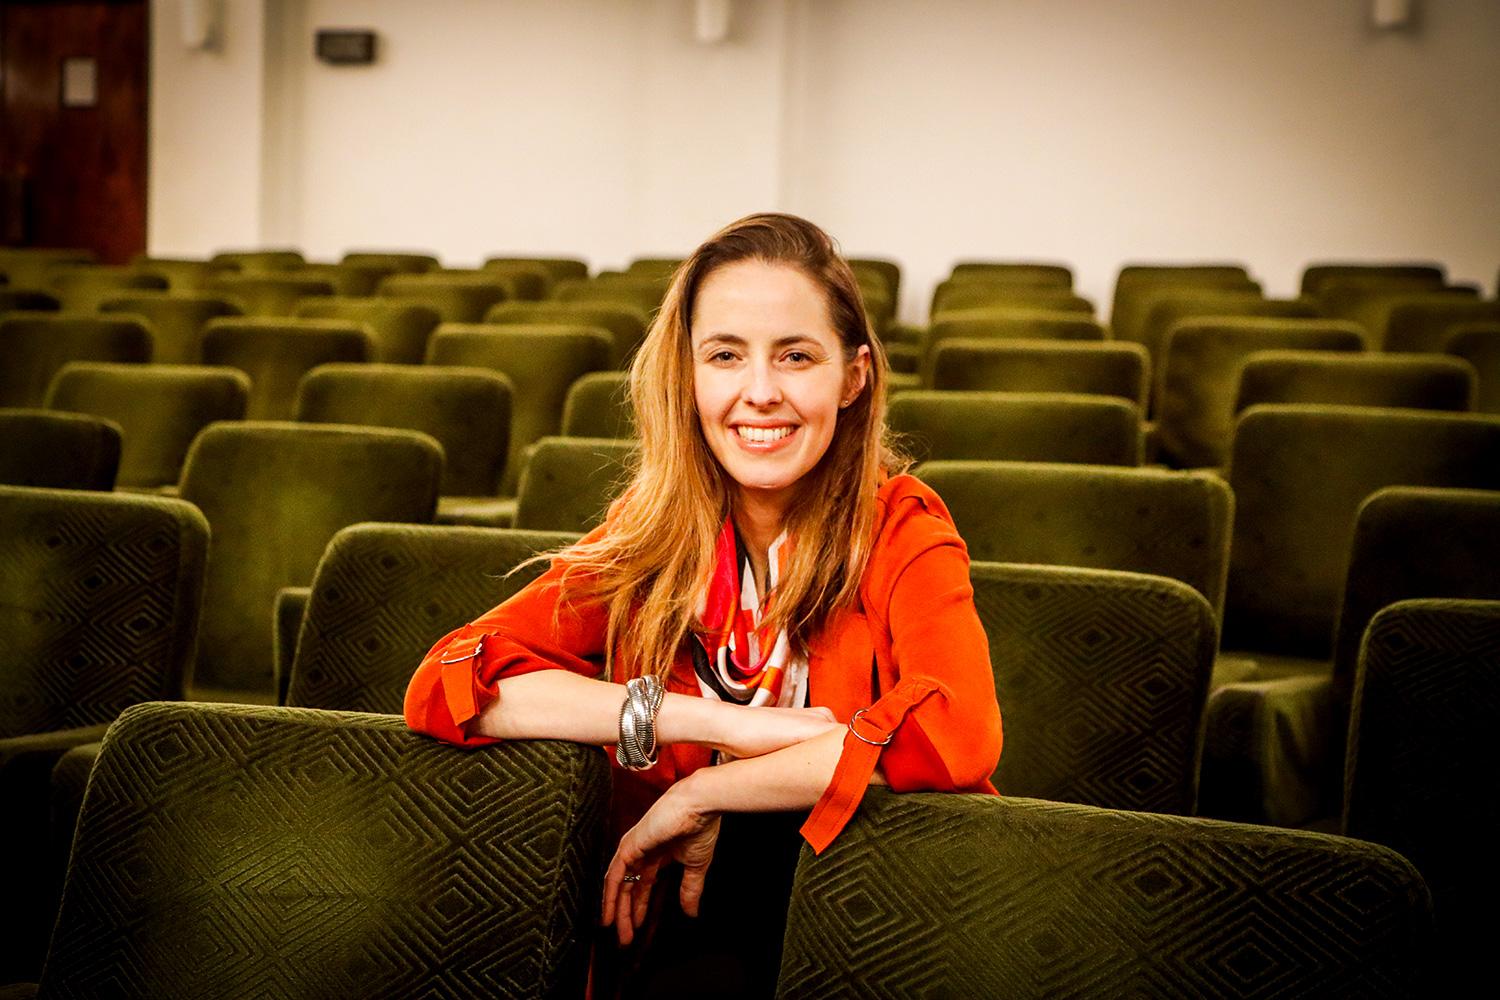 En la imagen aparece la nueva directora del Centro de Extensión CEAC, Dominique Thomann, sentada en las butacas del Teatro Universidad de Chile.